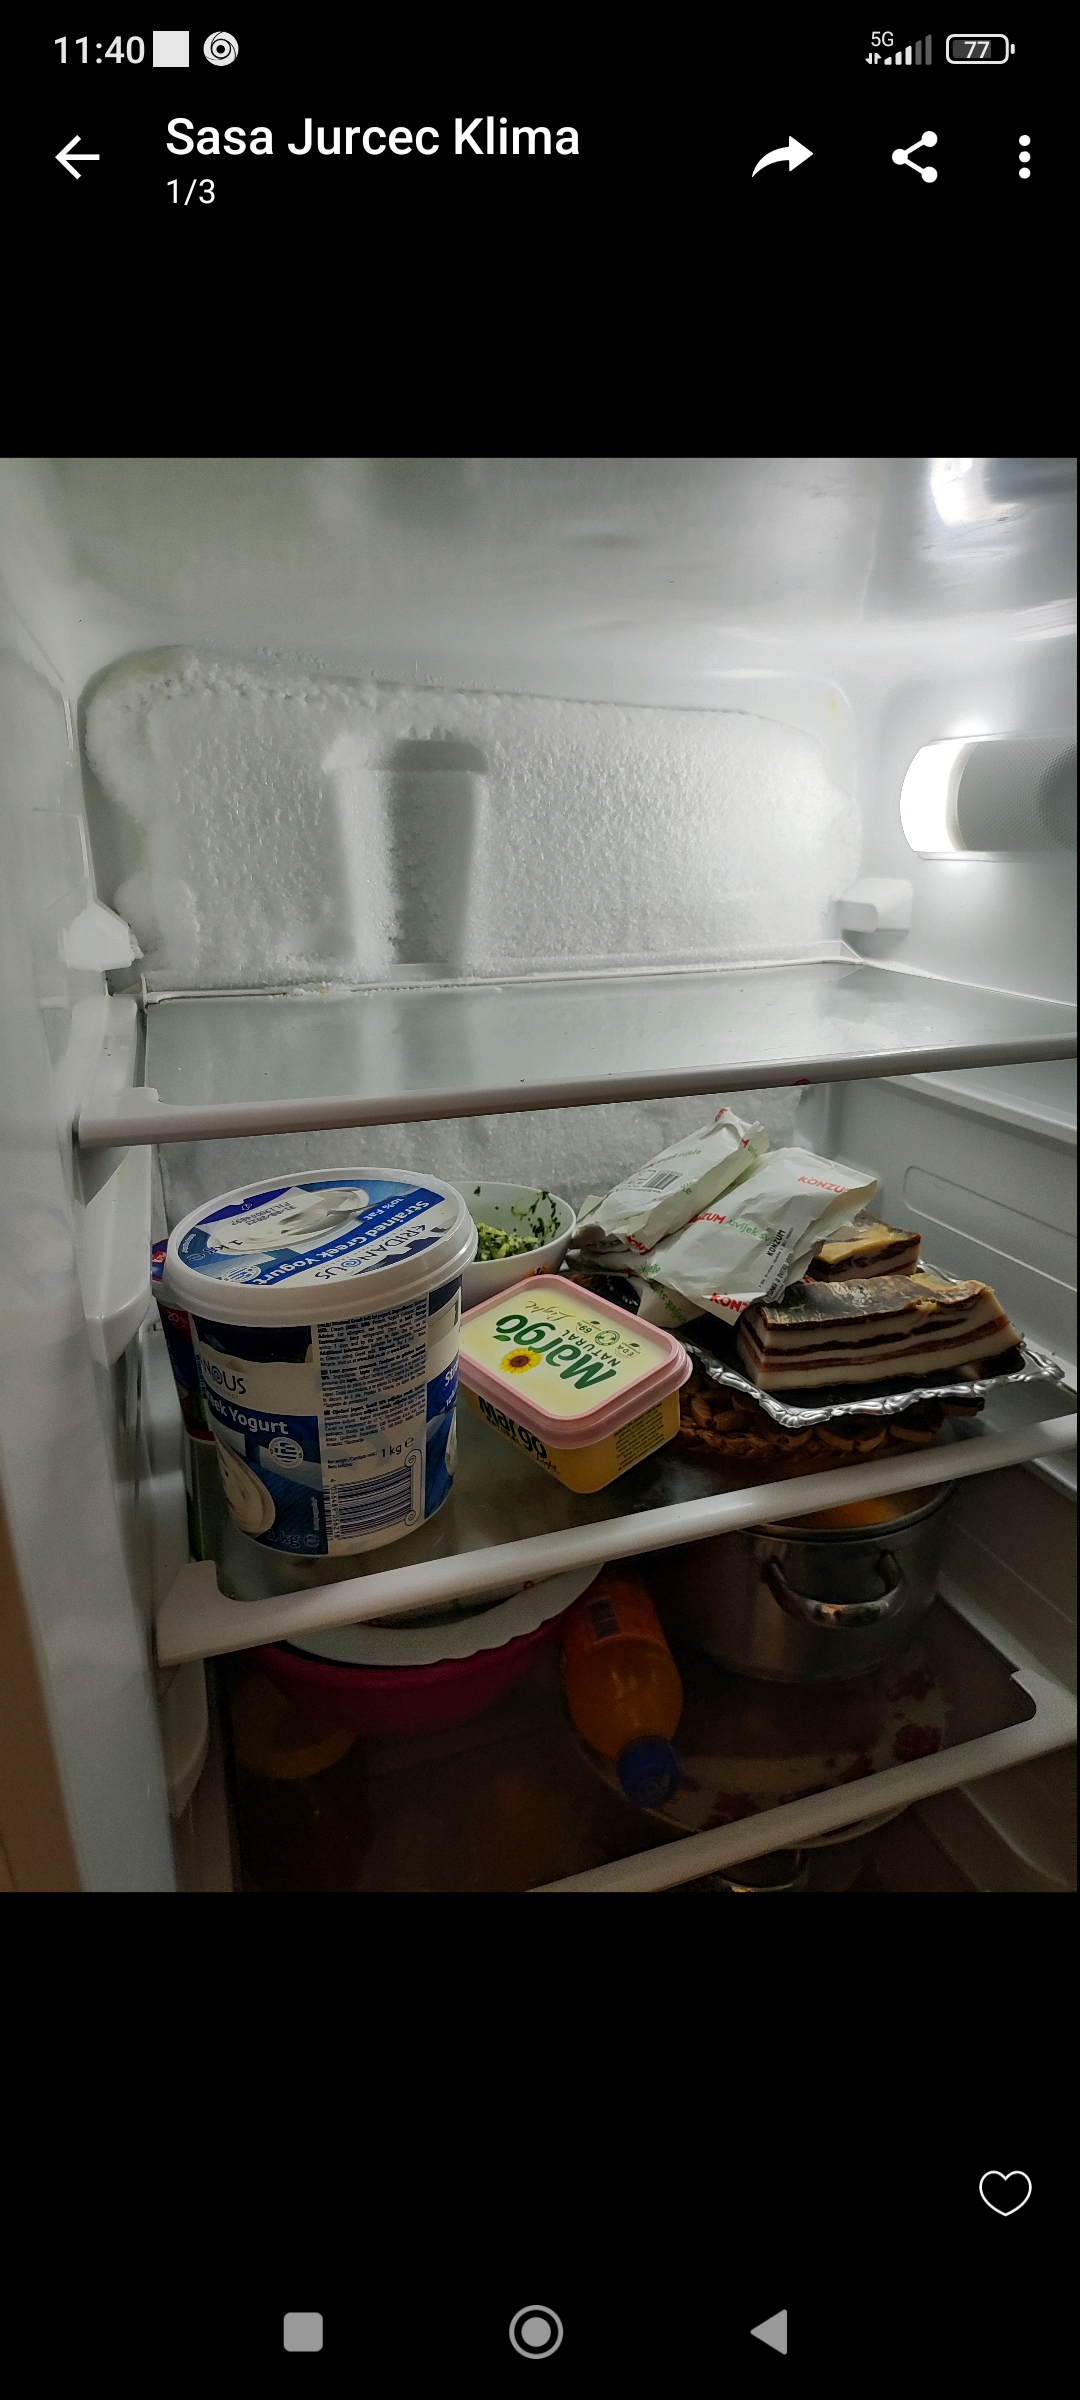 Na pozadí chladničky sa tvorí ľad
Obrázok priložený
Čo robiť?